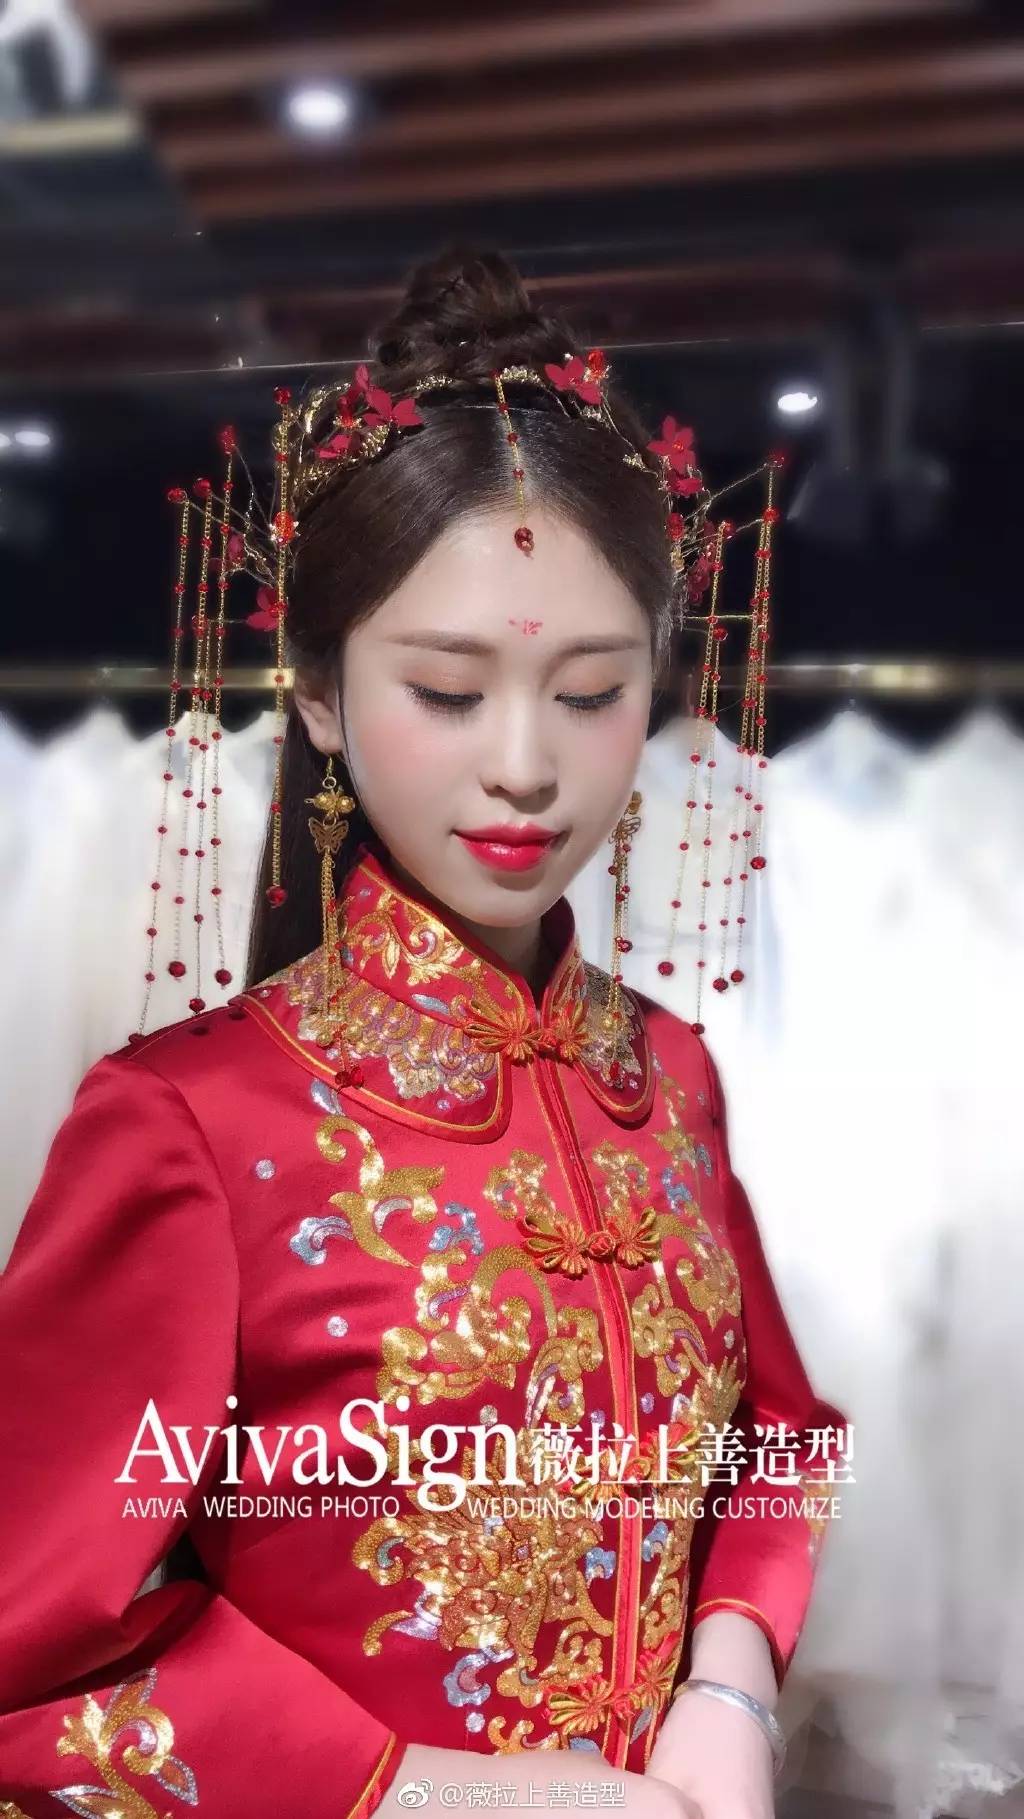 中式发钗,耳饰,中国风妆容造型元素:看过很多明星新娘都在敬酒环节